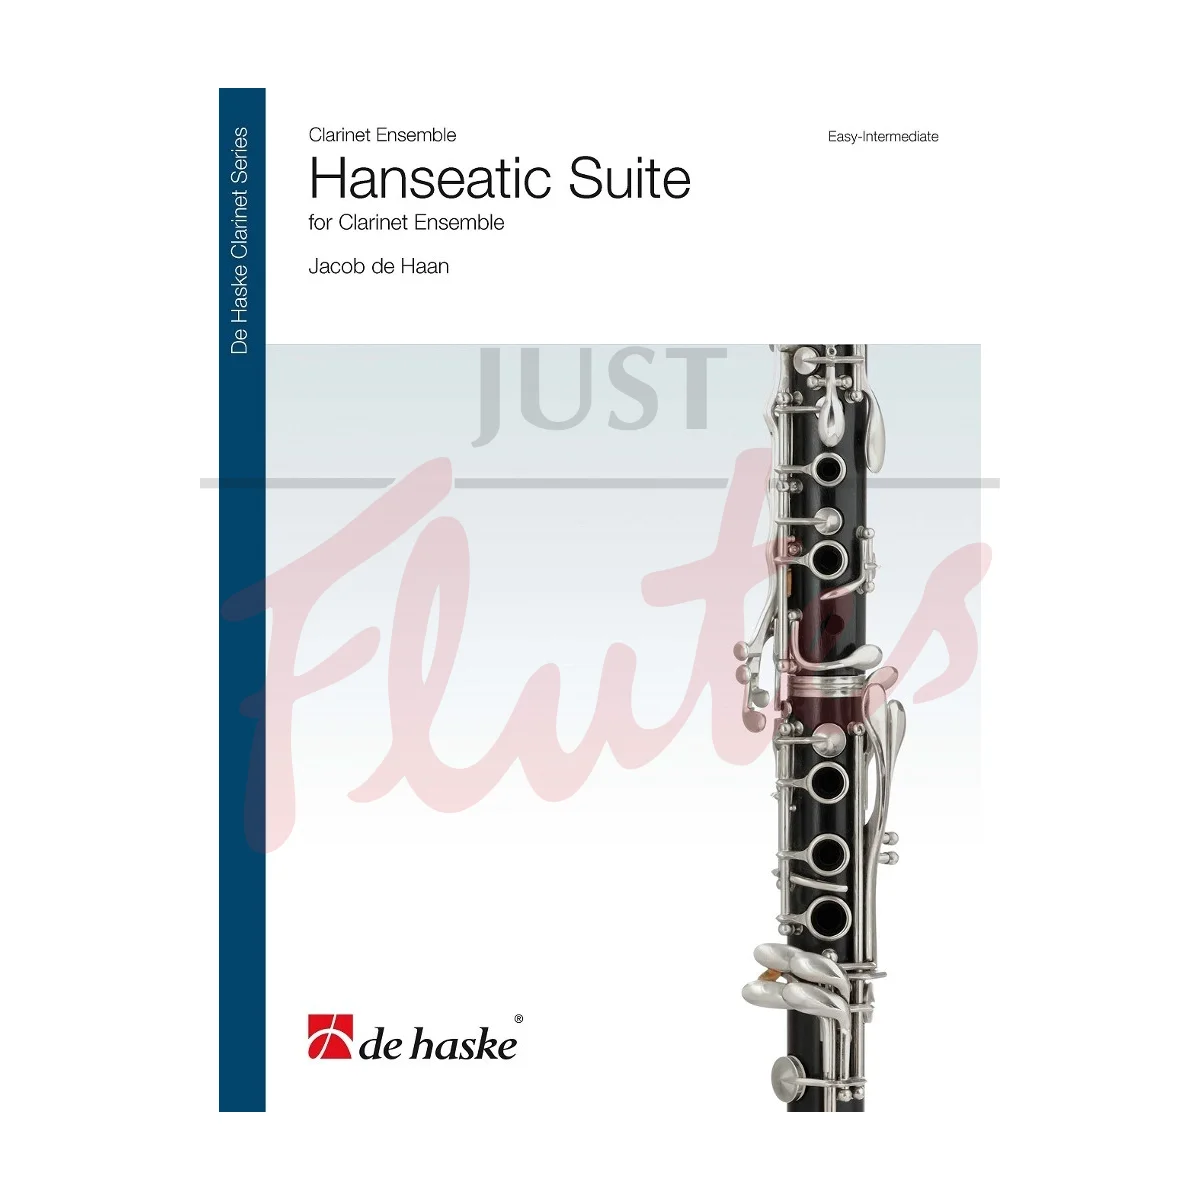 Hanseatic Suite for Clarinet Ensemble